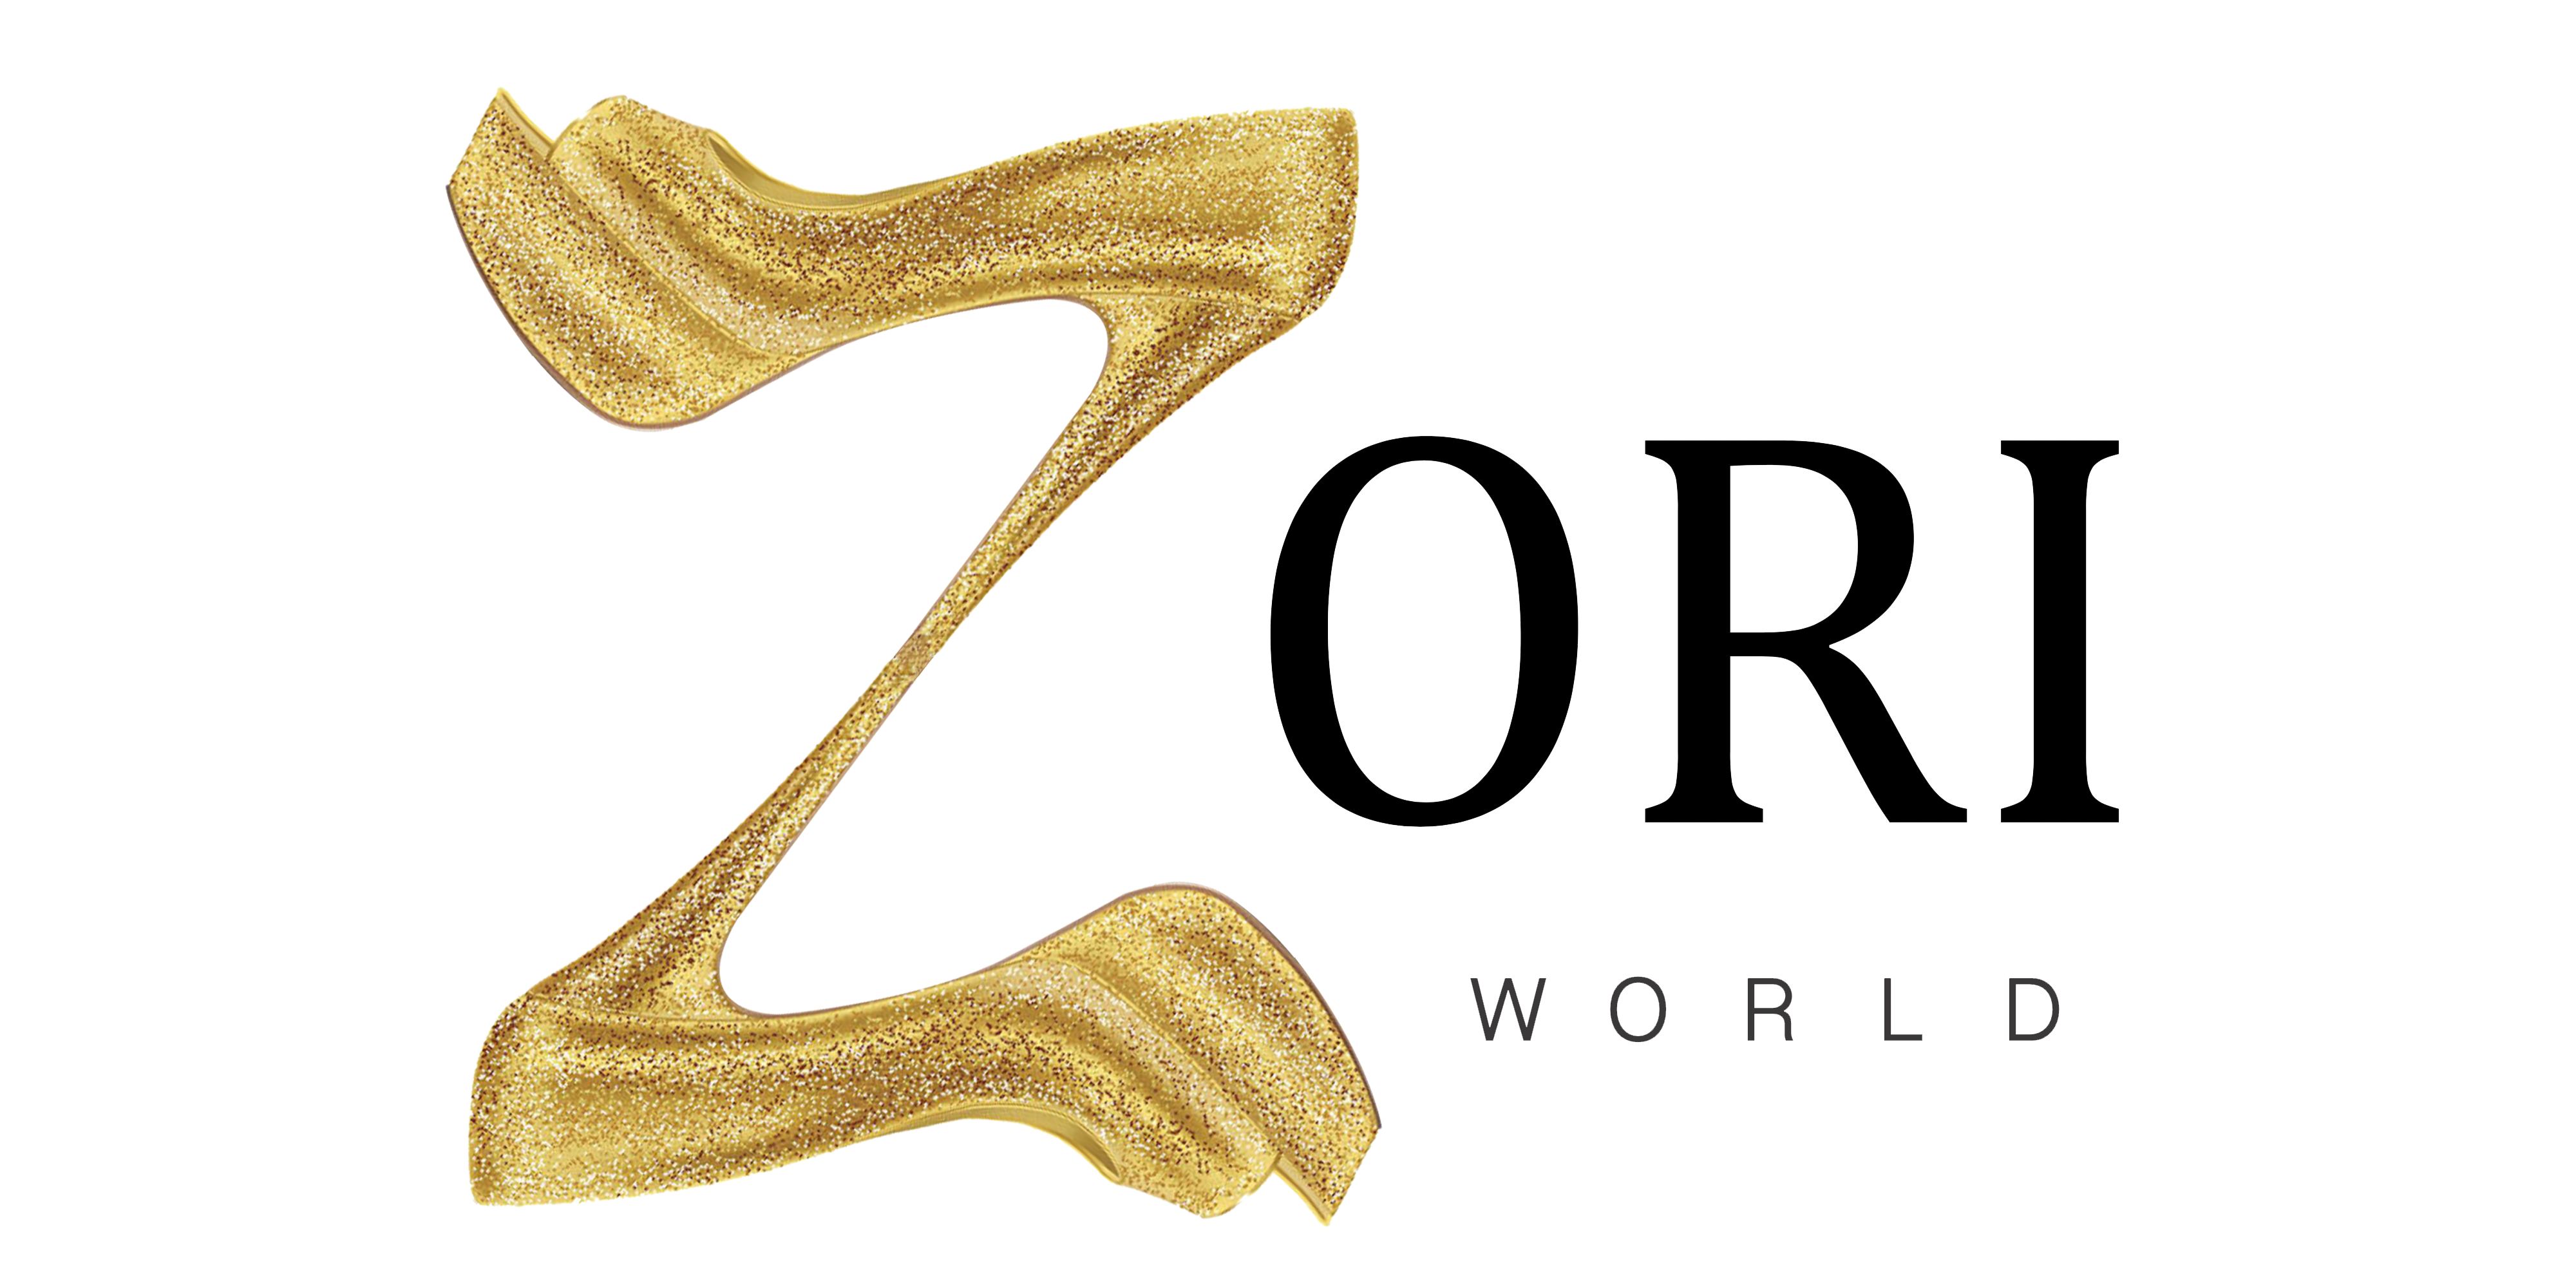 Zori World